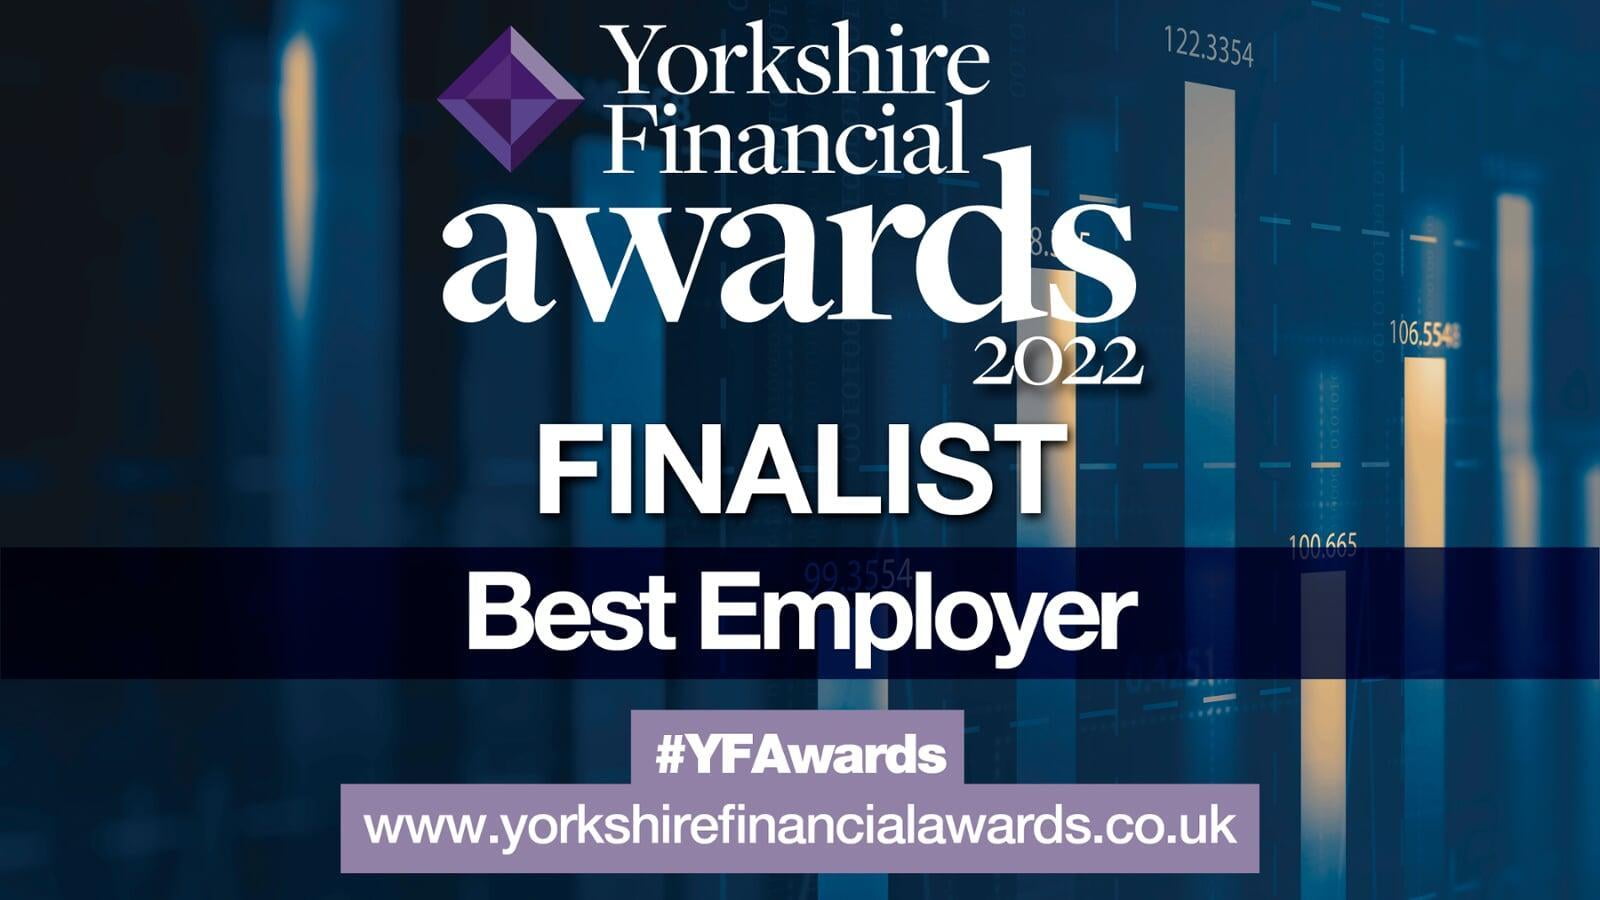 Yorkshire Financial Awards Finalist Best Employer 2022